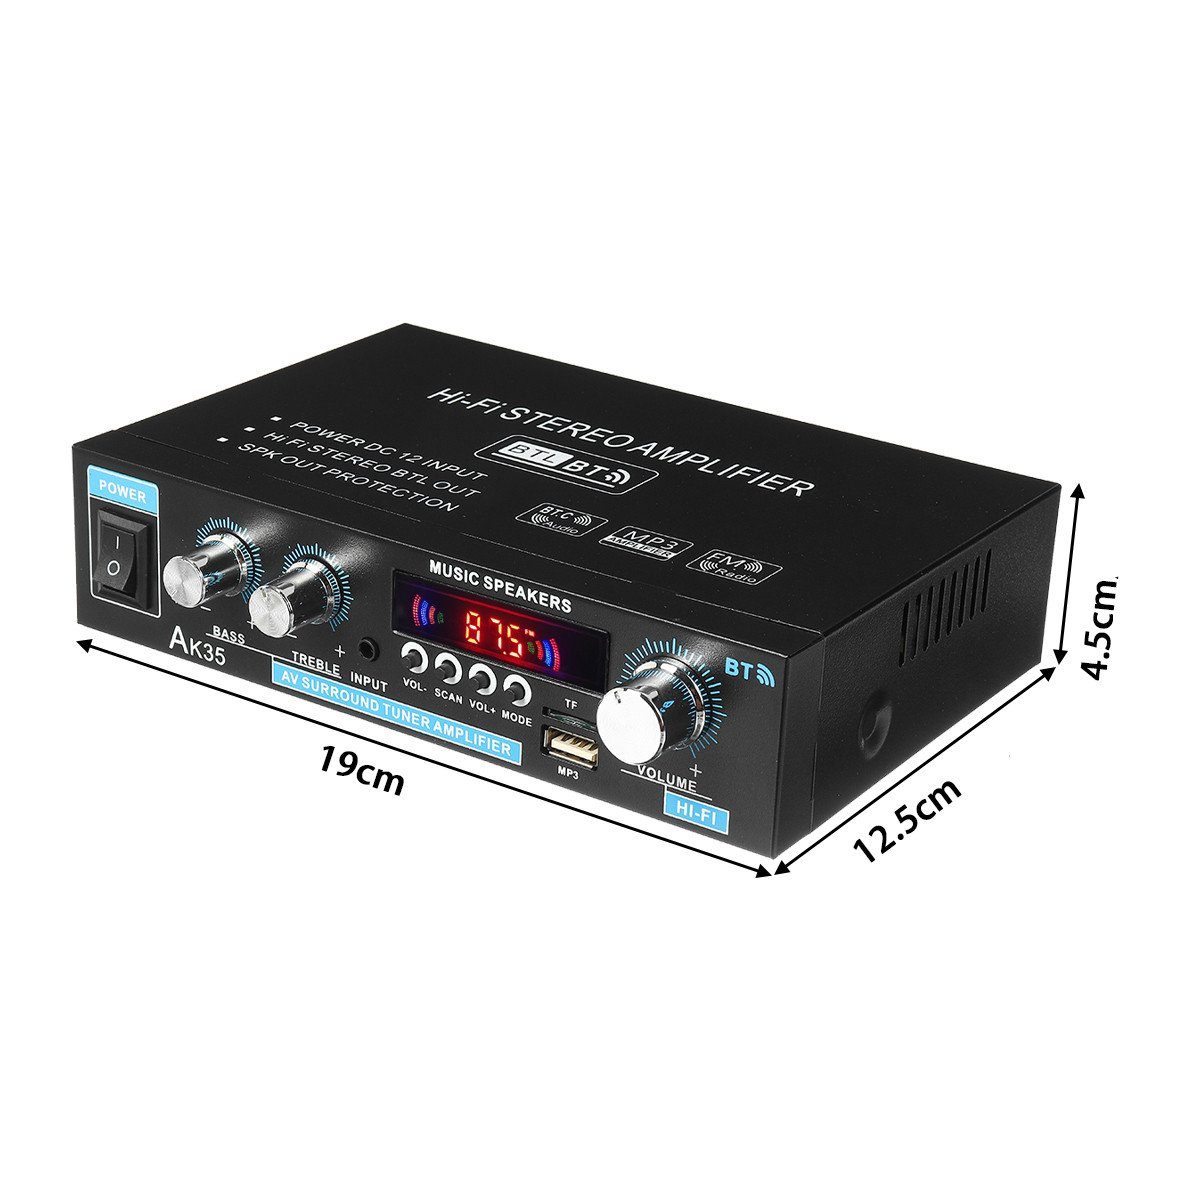 Digital bluetooth Amplifier) Audio Insma Stereo Verstärker 600W Audioverstärker HiFi (2-Kanal